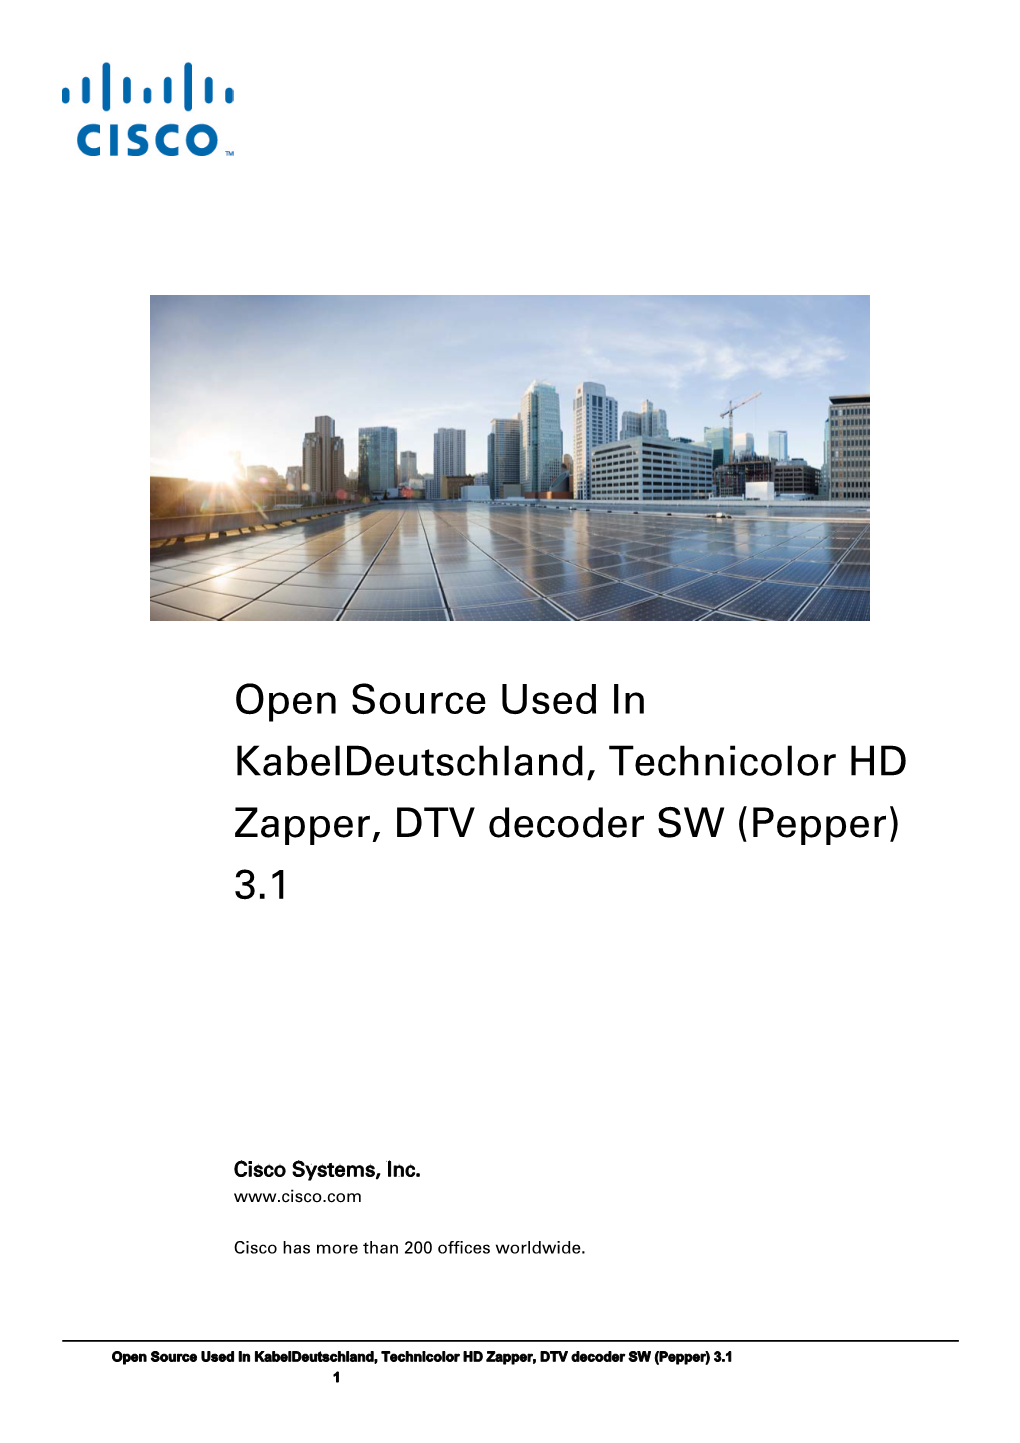 Open Source Used in Kabeldeutschland, Technicolor HD Zapper, DTV Decoder SW (Pepper) 3.1